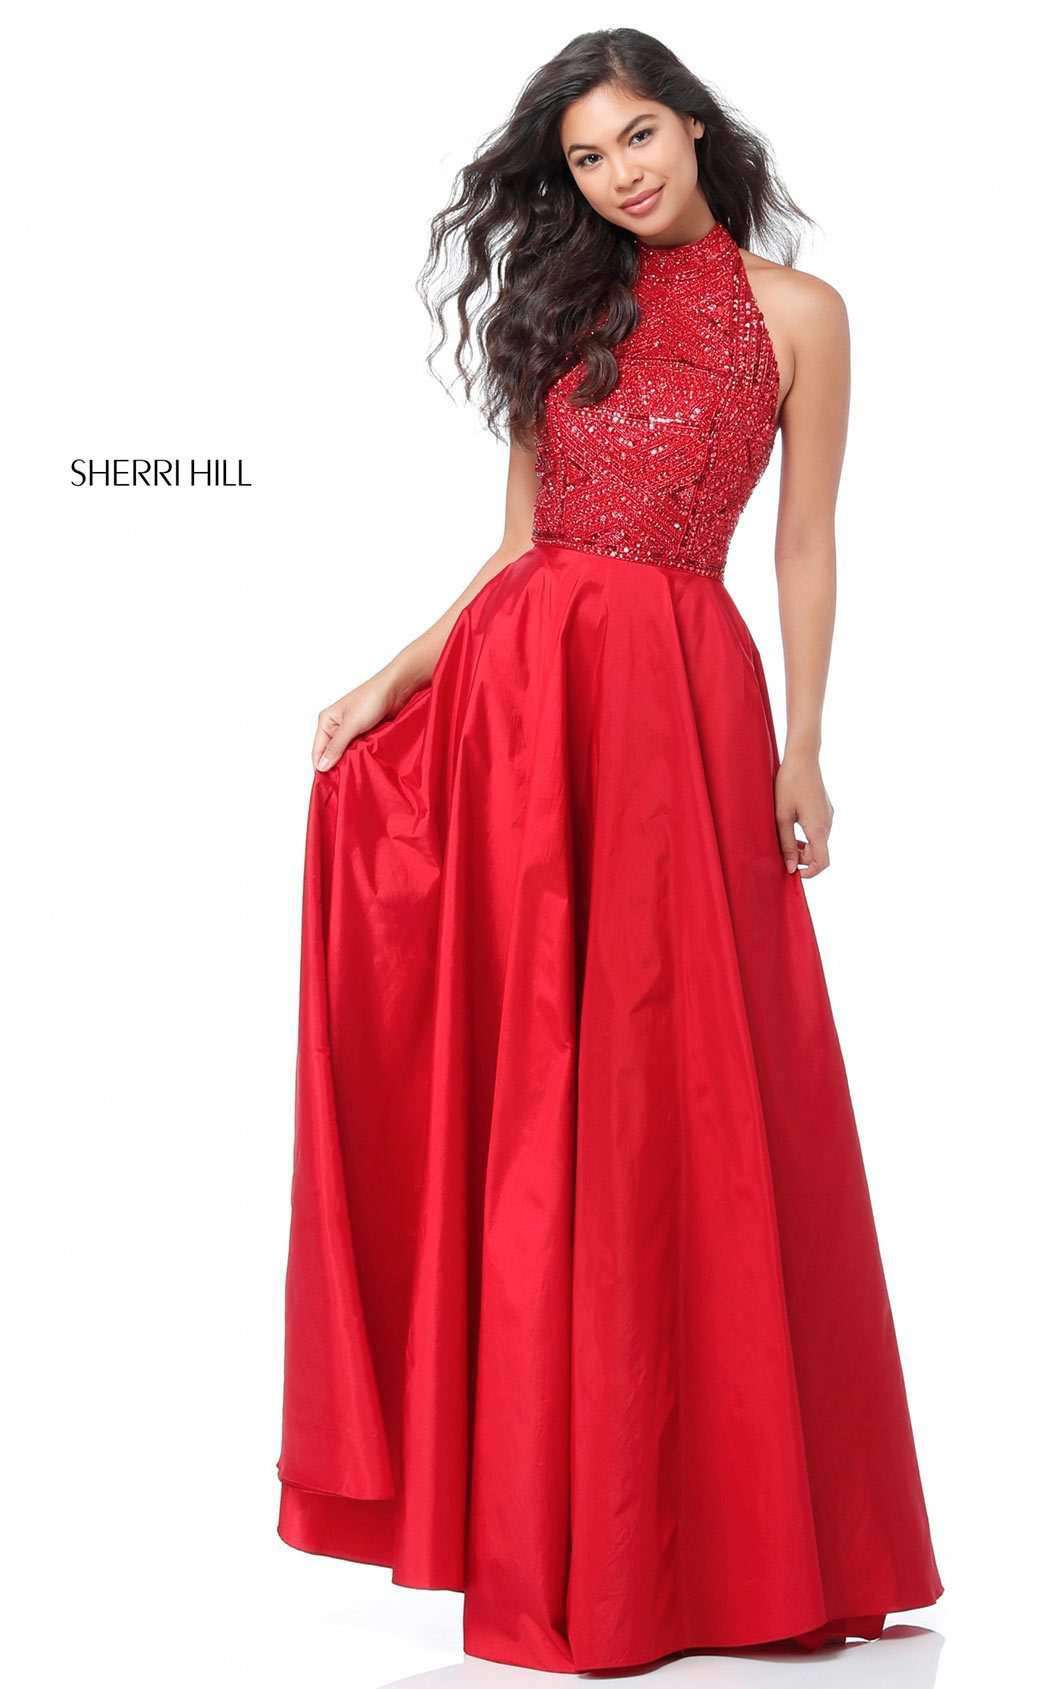 Sherri Hill 51690 Dress | Buy Designer Gowns & Evening Dresses ...